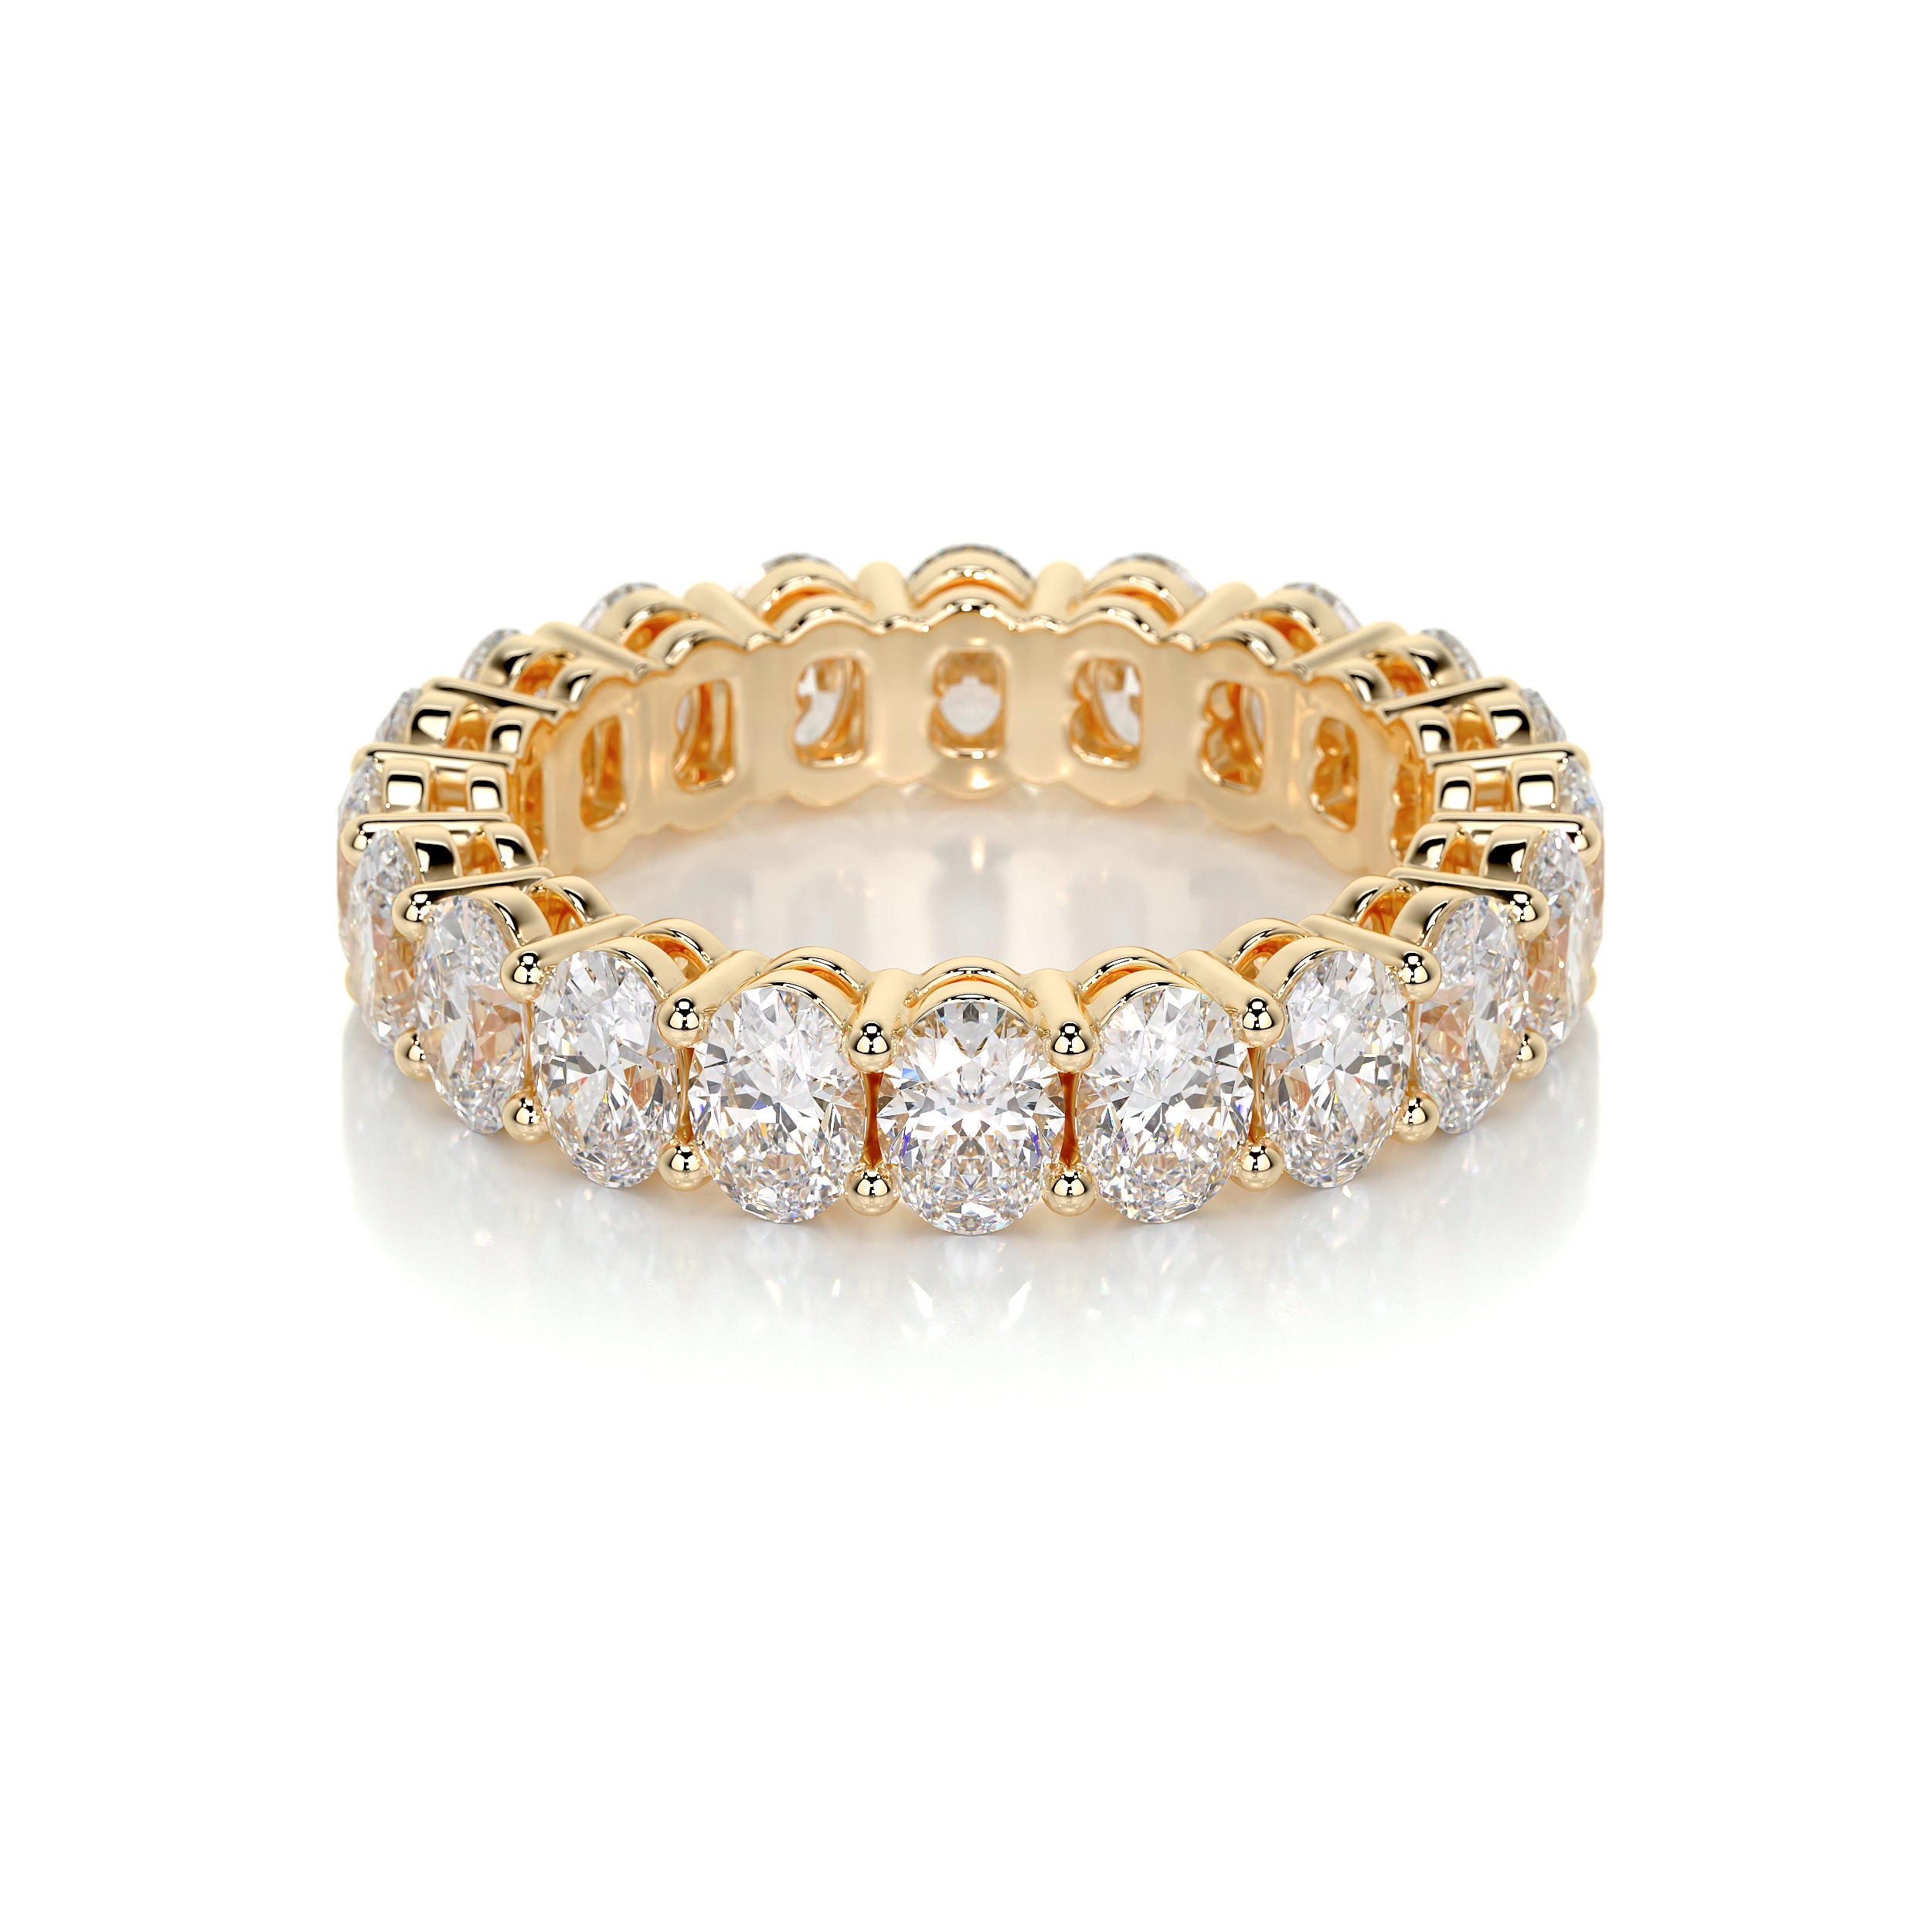 Julia Lab Grown Diamond Wedding Ring   (3.5 Carat) -18K Yellow Gold